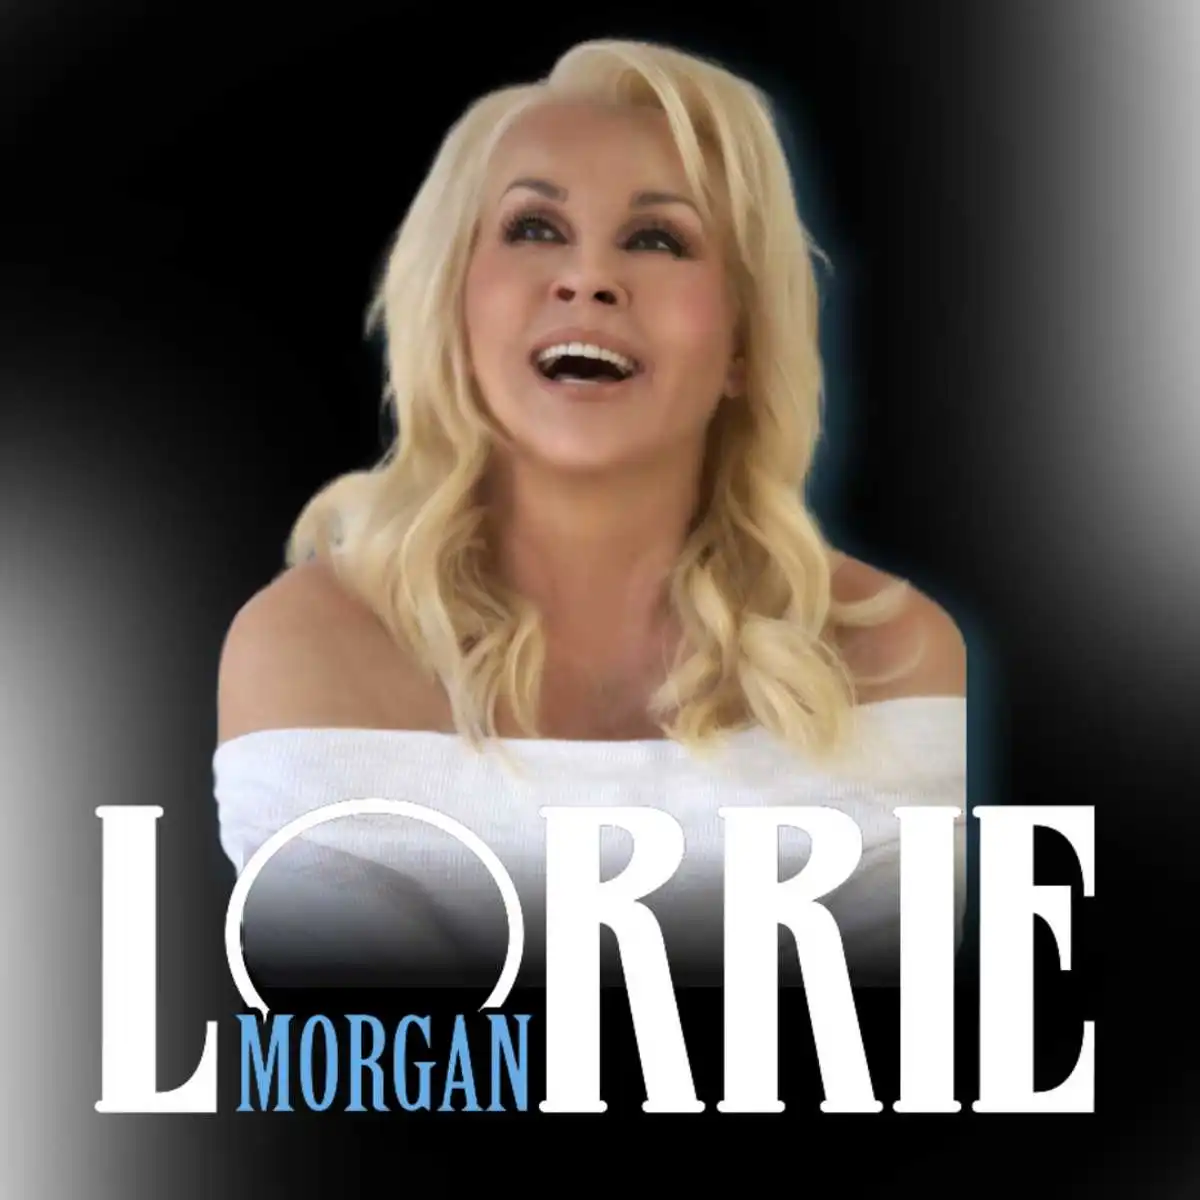 Lorrie Morgan